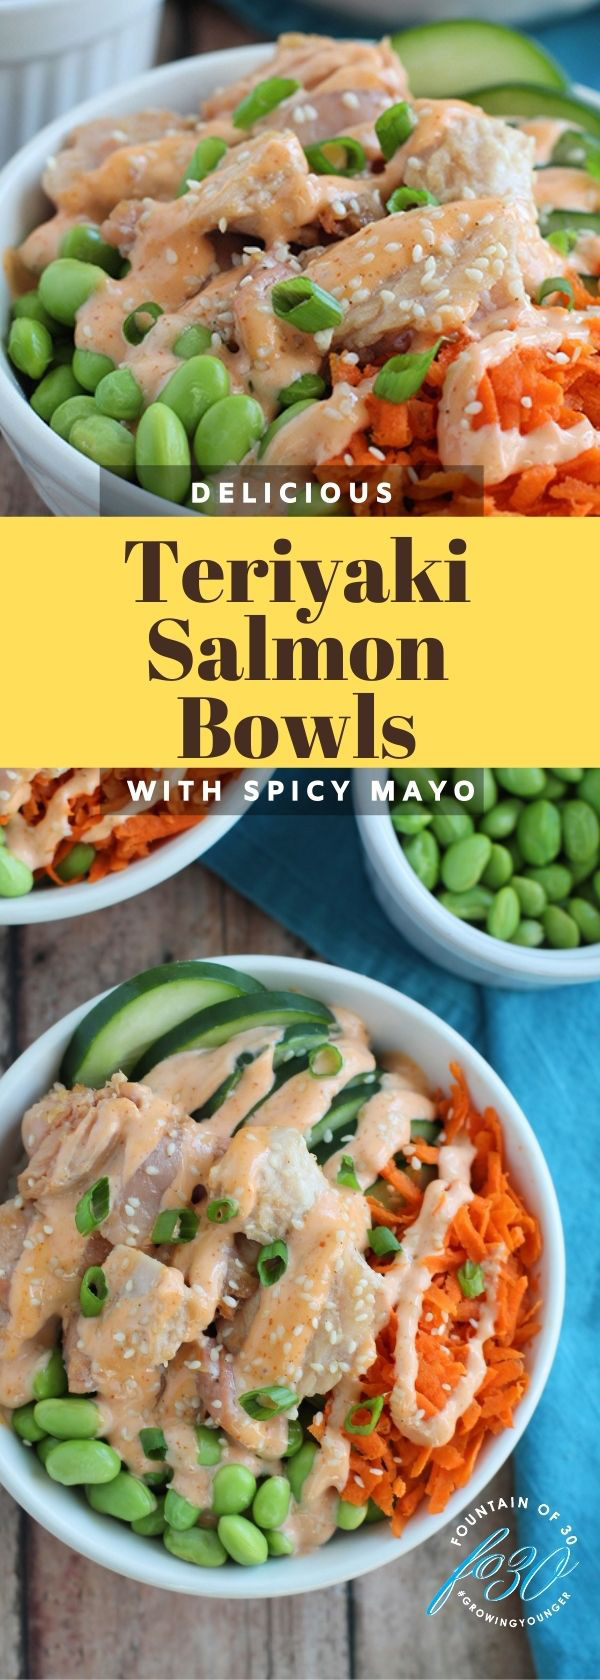 teriyaki salmon bowl recipe fountainof30